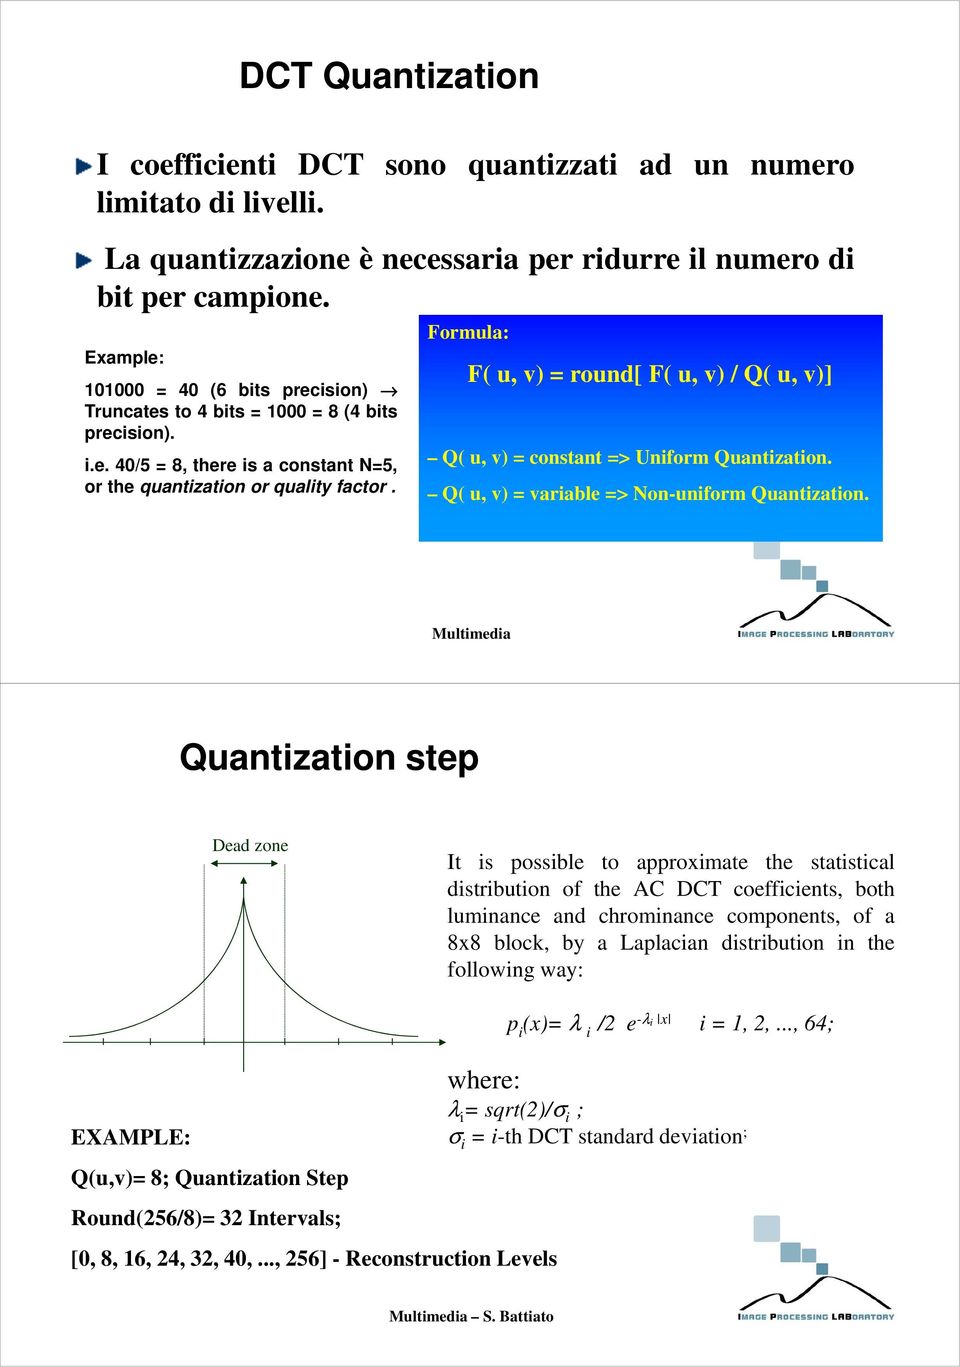 Formula: F u v round[ F u v / Q u v] Q u v constant > Uniform Quantization. Q u v variabl > on-uniform Quantization.